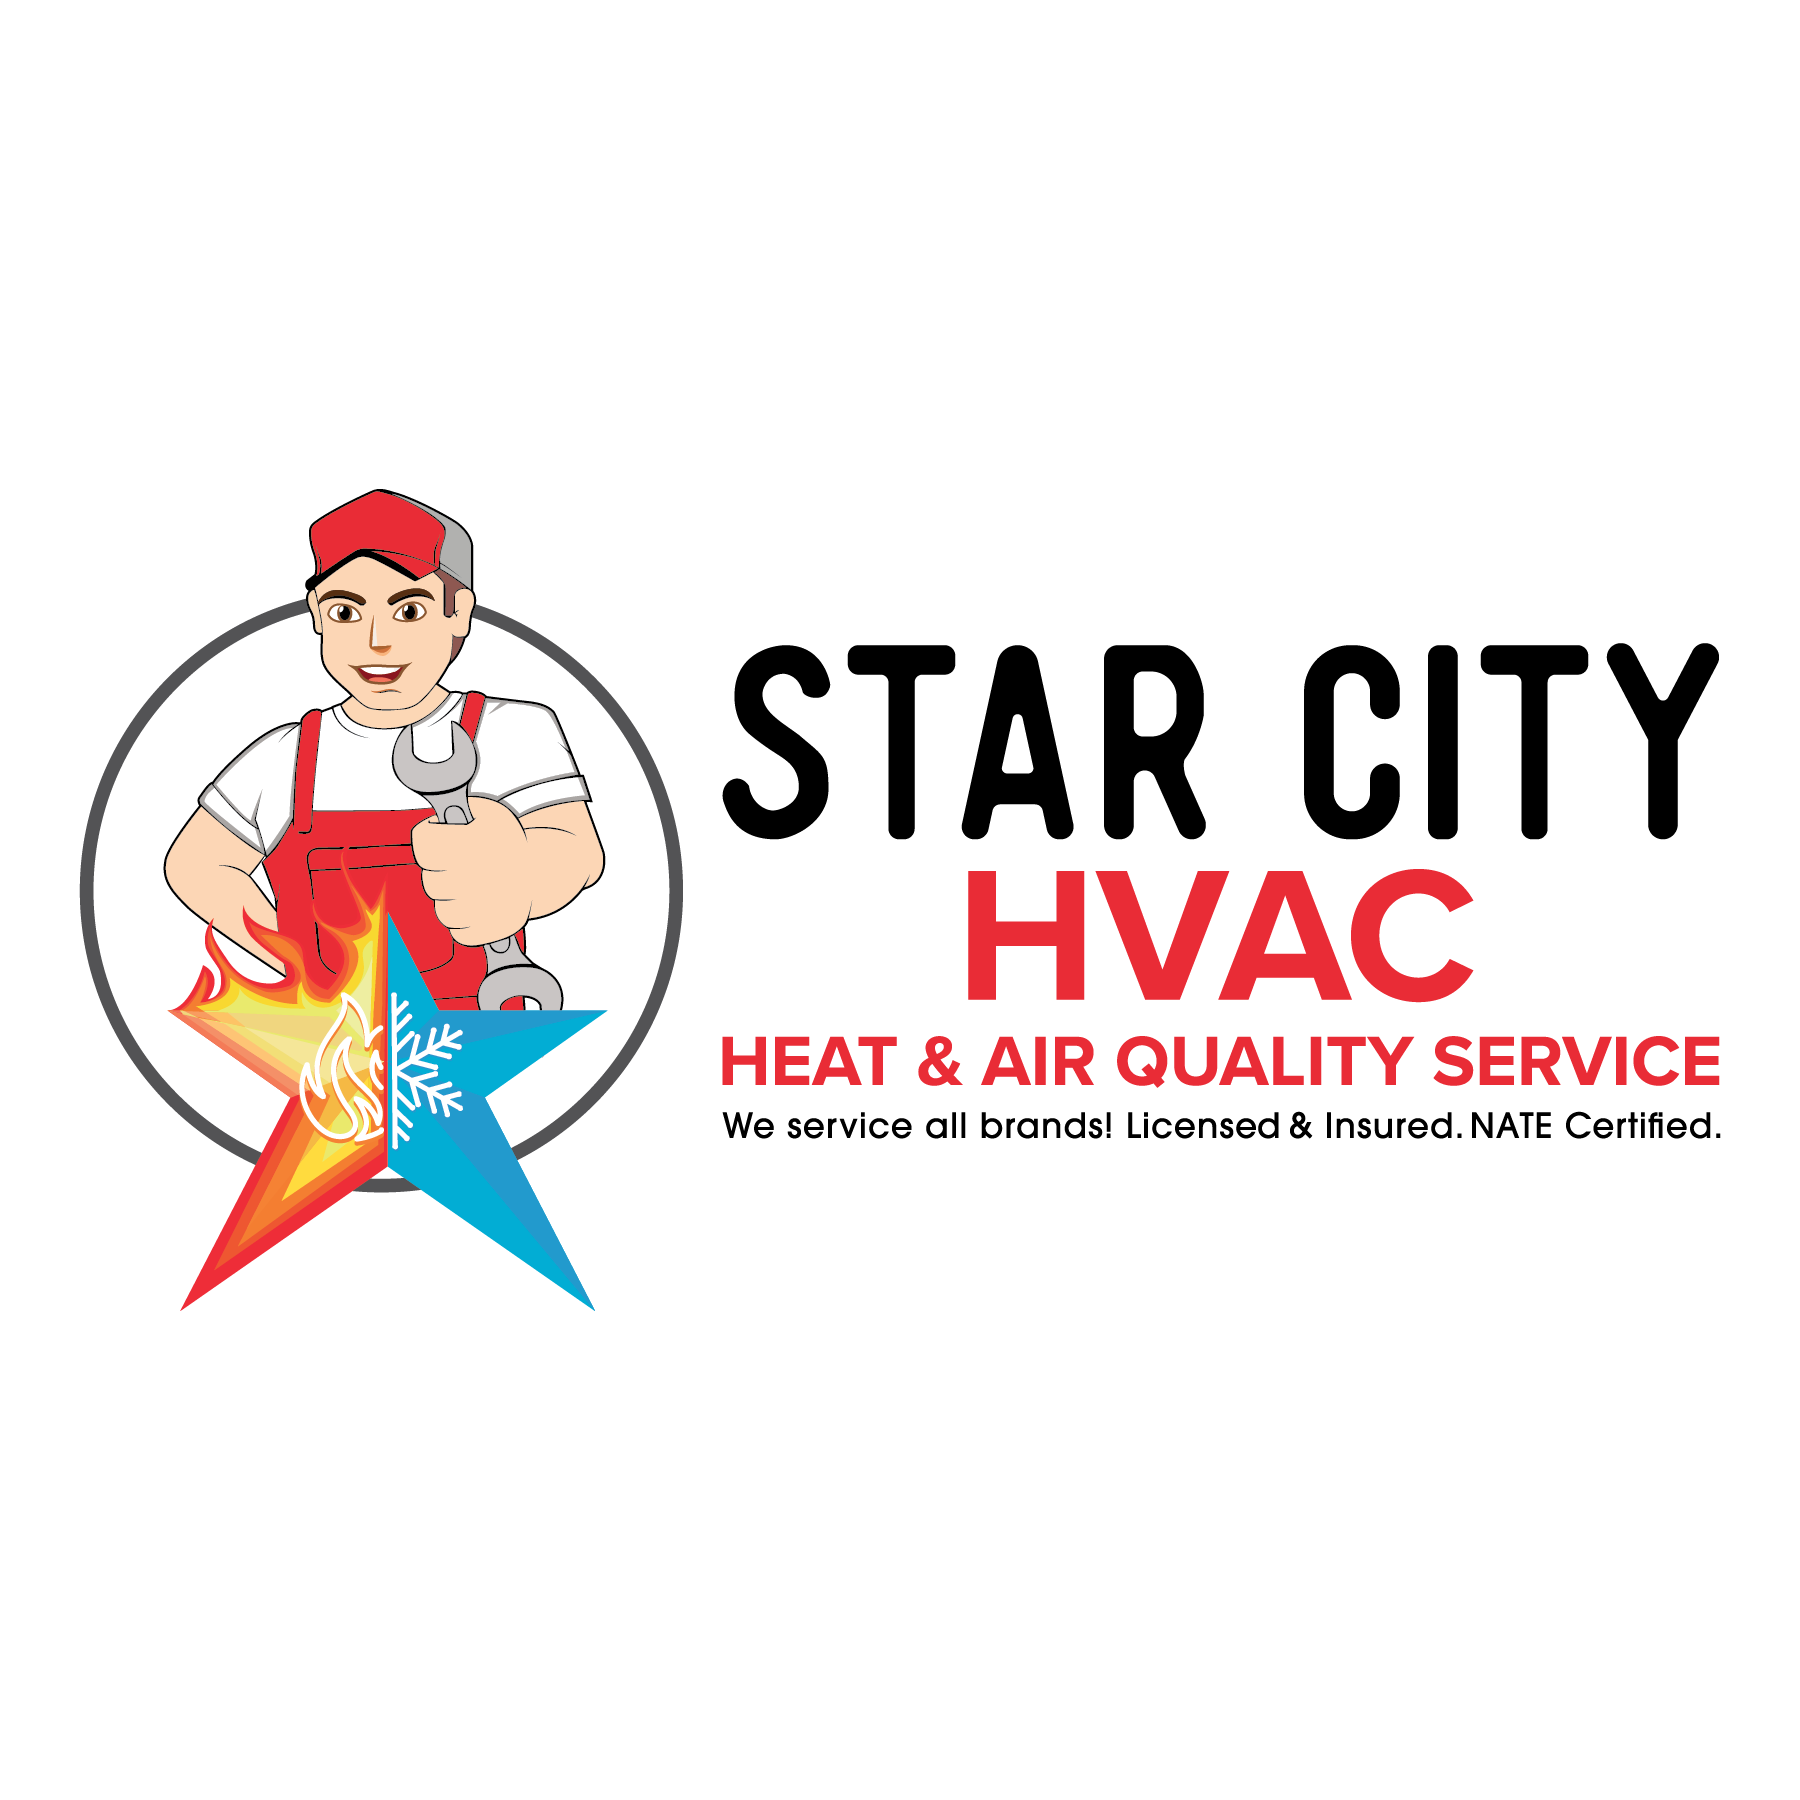 Star City HVAC, LLC Logo